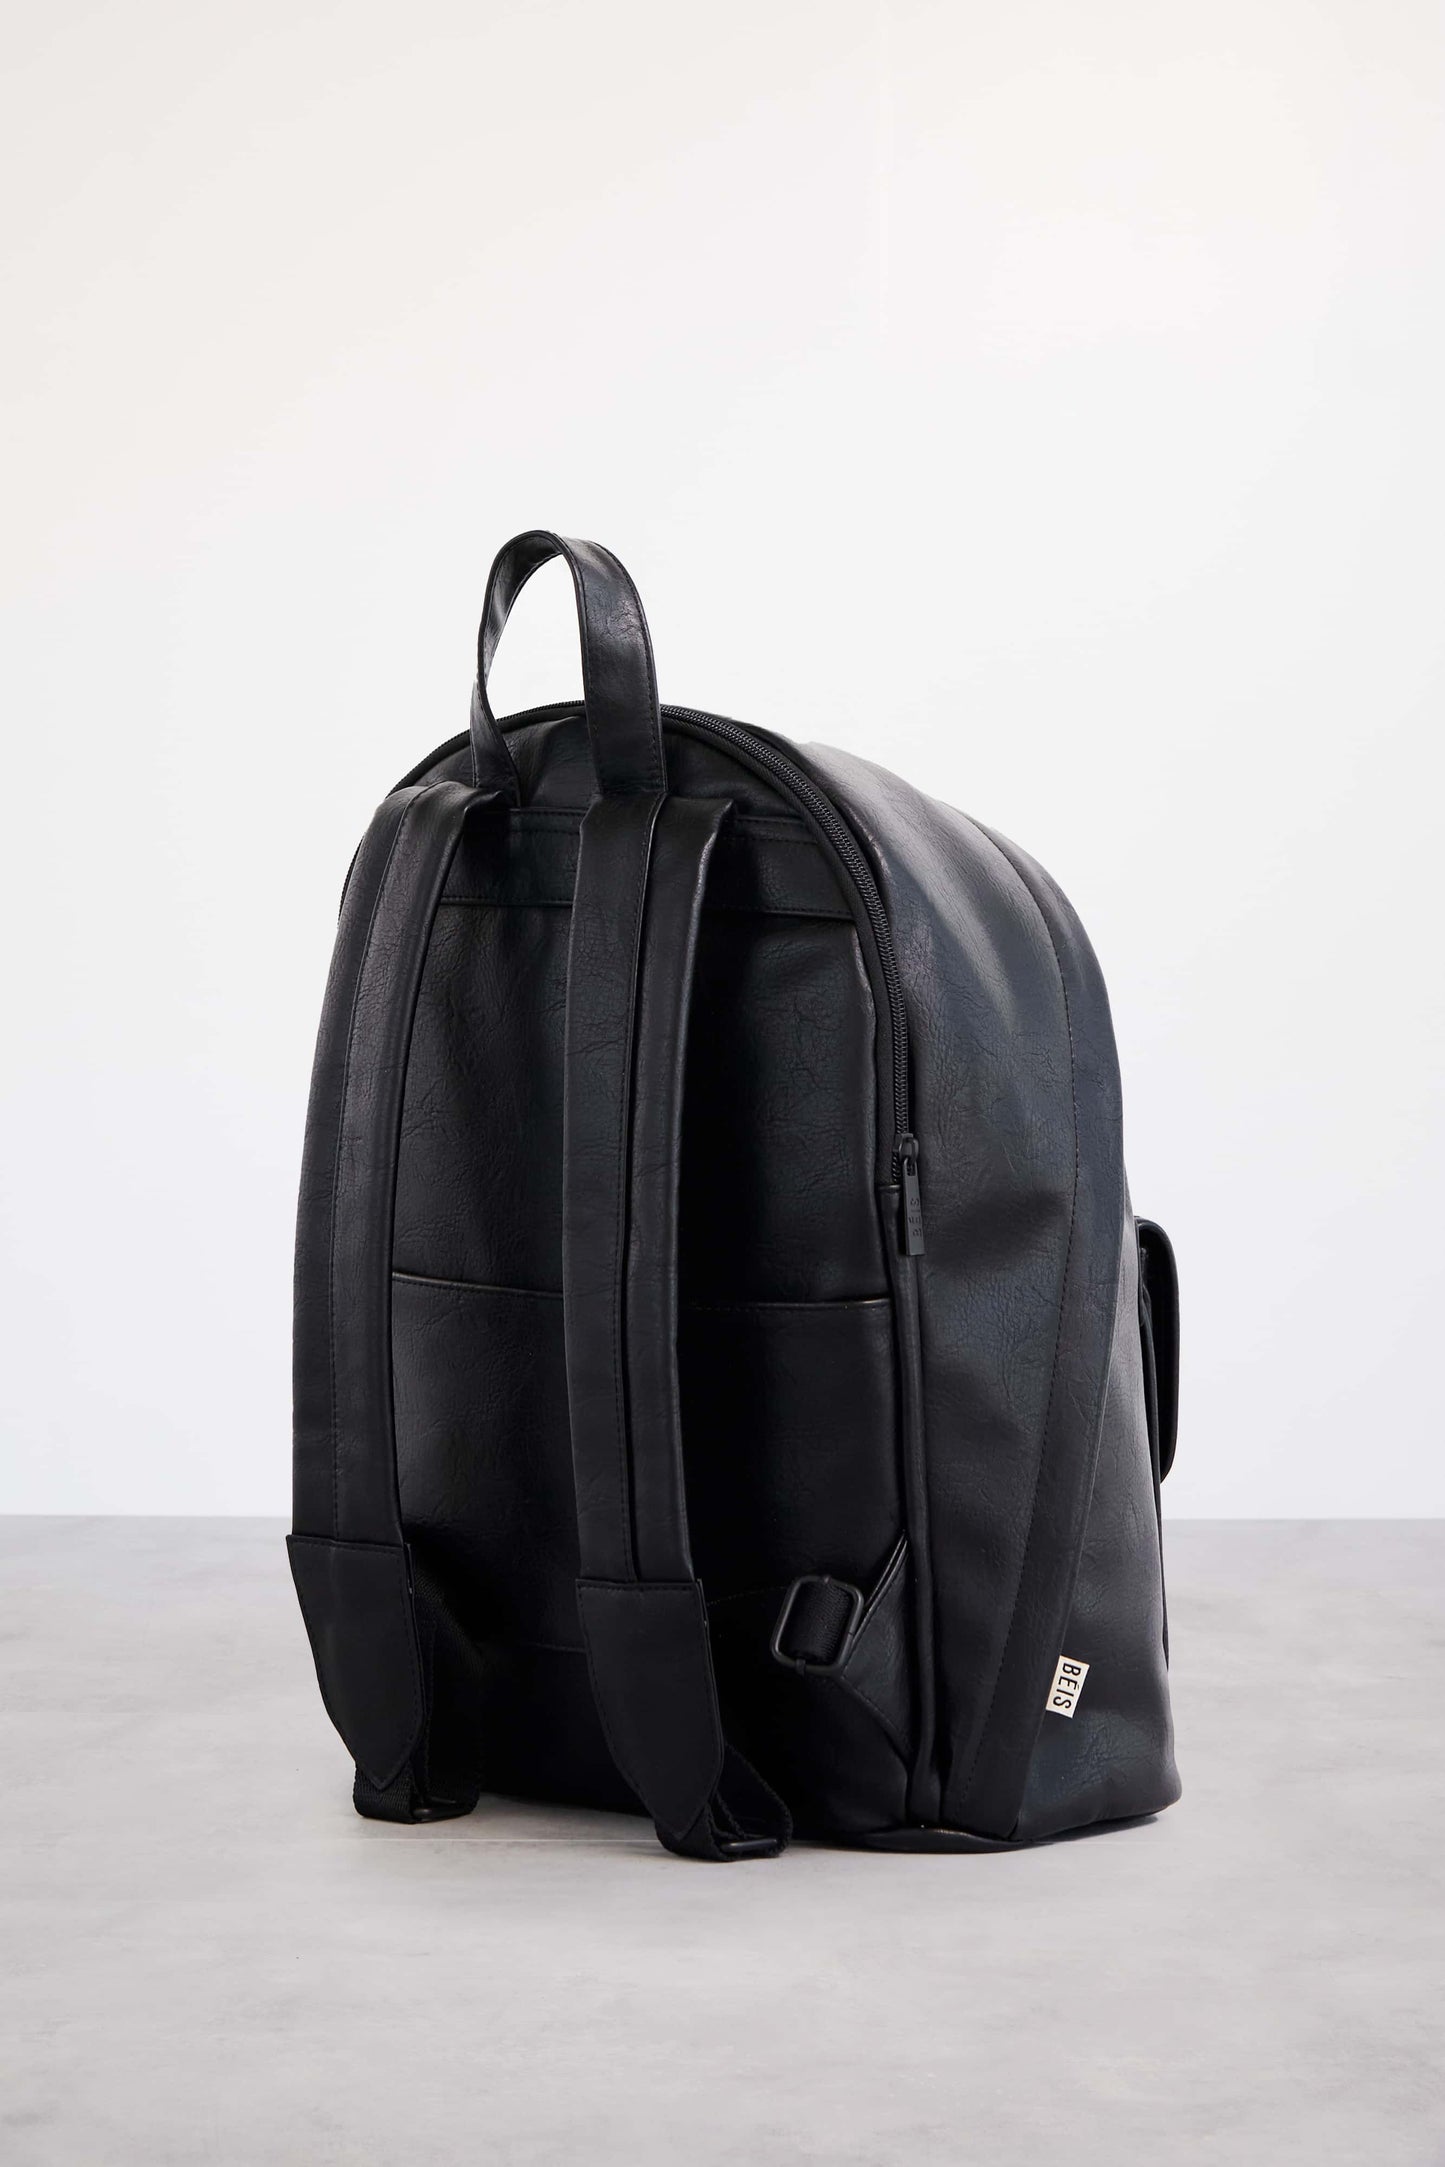 Backpack 2 in 1 Black Back